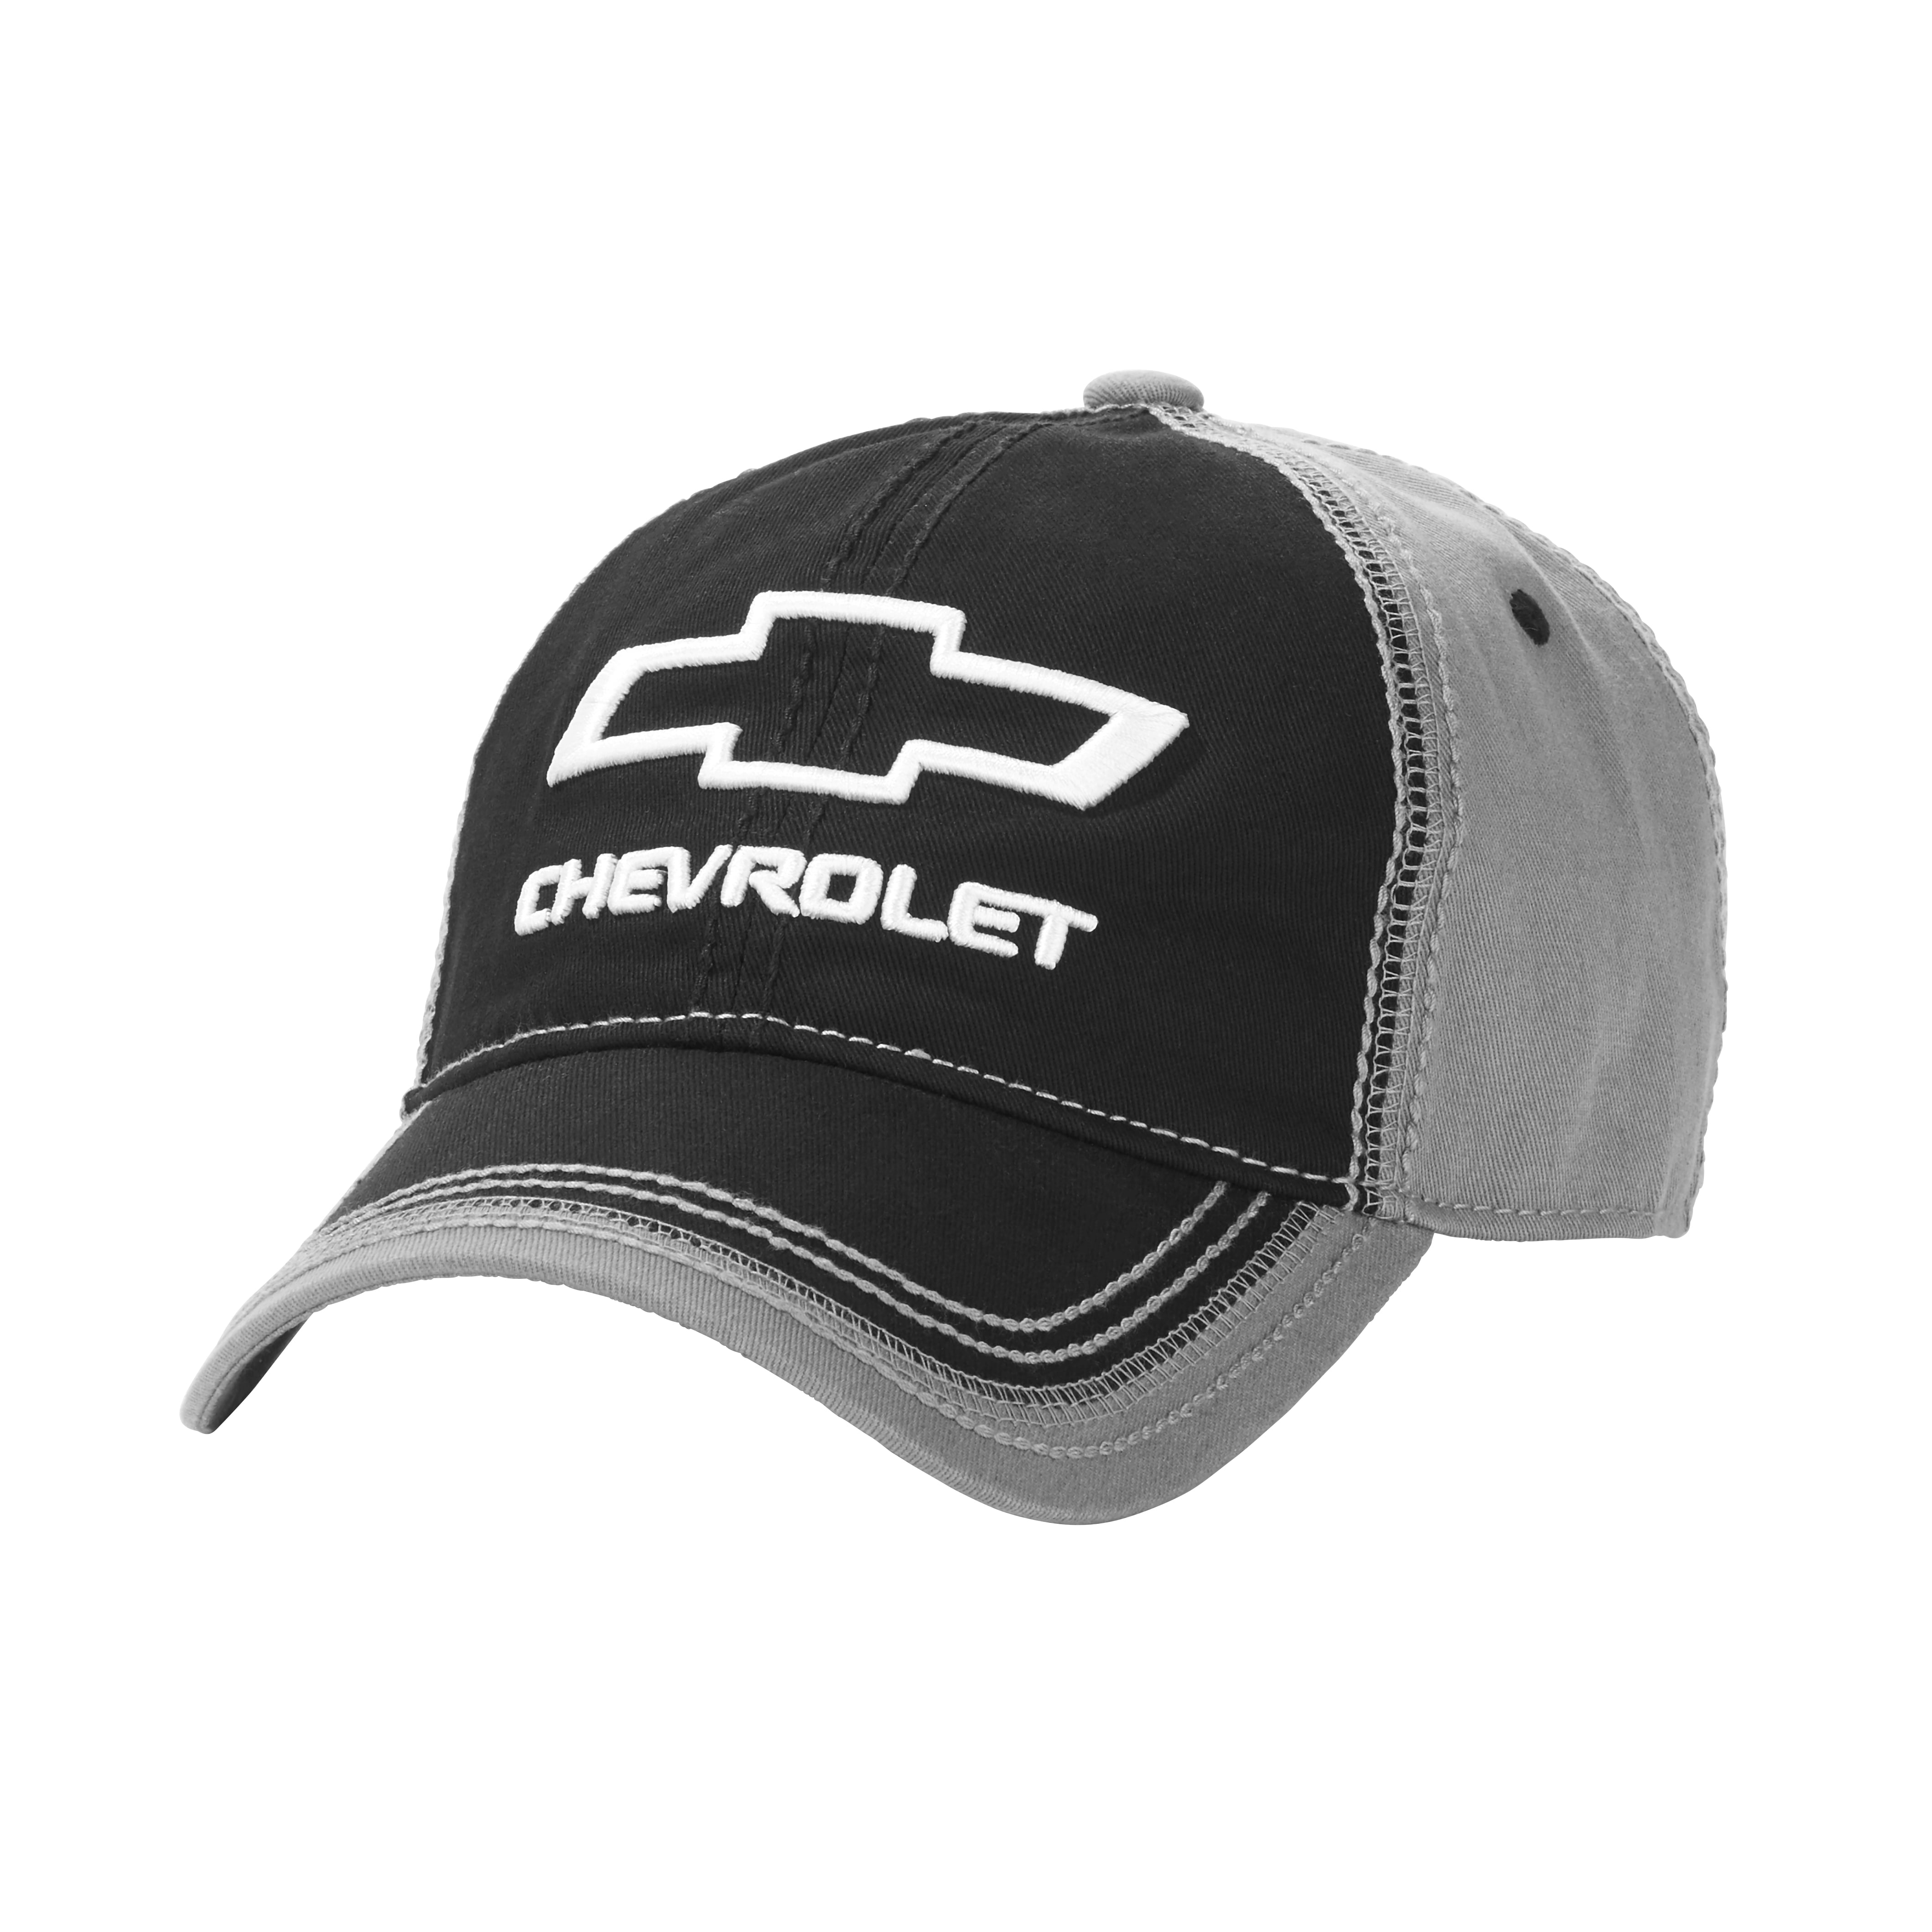 GM Licensed Chevy Detroit MI Bowtie Baseball Hat